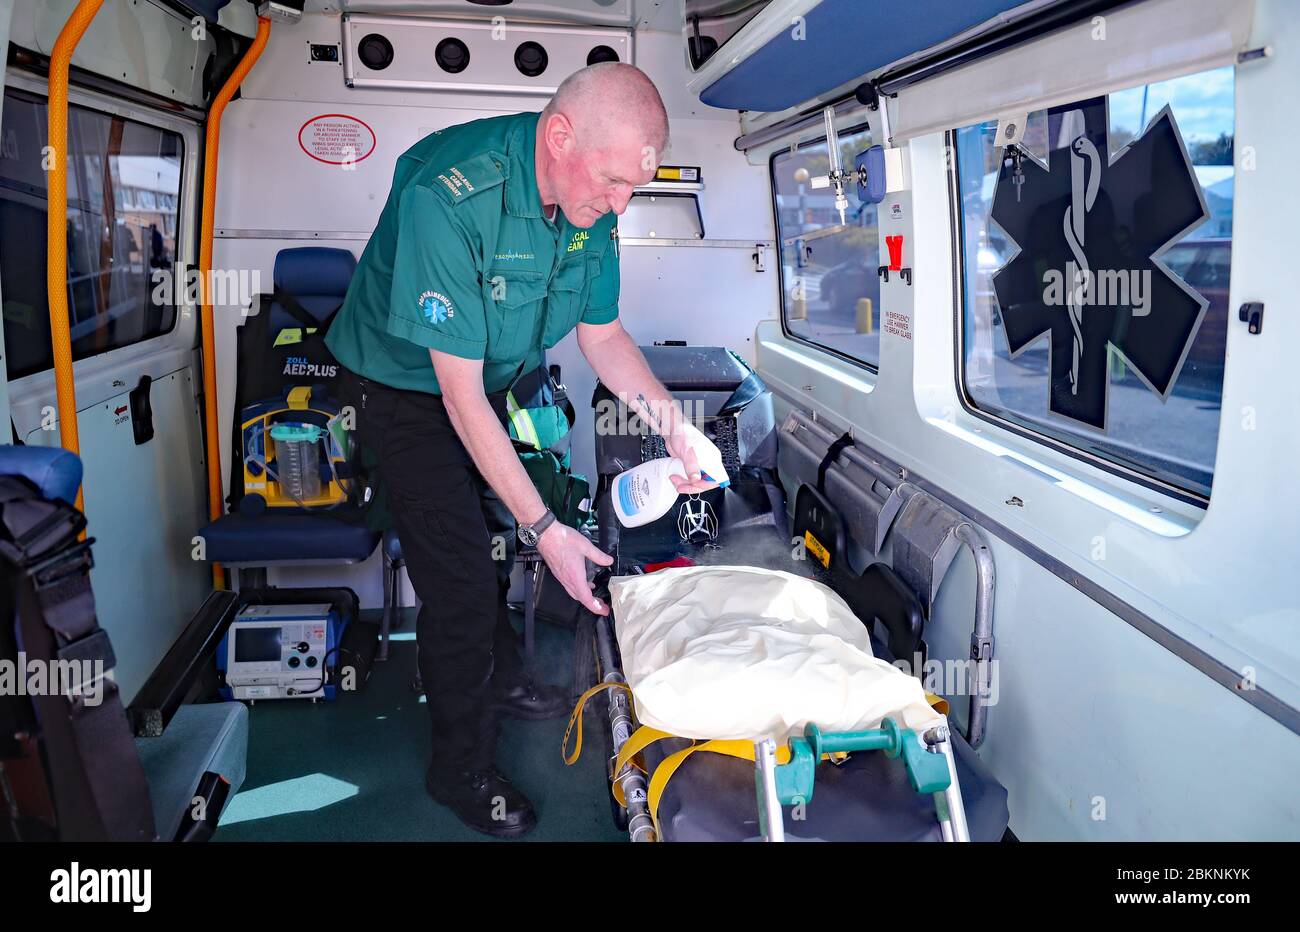 Paramedico Gary McKelvie disinfetta un'ambulanza usata per trasportare i pazienti di Covid-19 al Craigavon Area Hospital di Co Armagh, Irlanda del Nord. Foto Stock